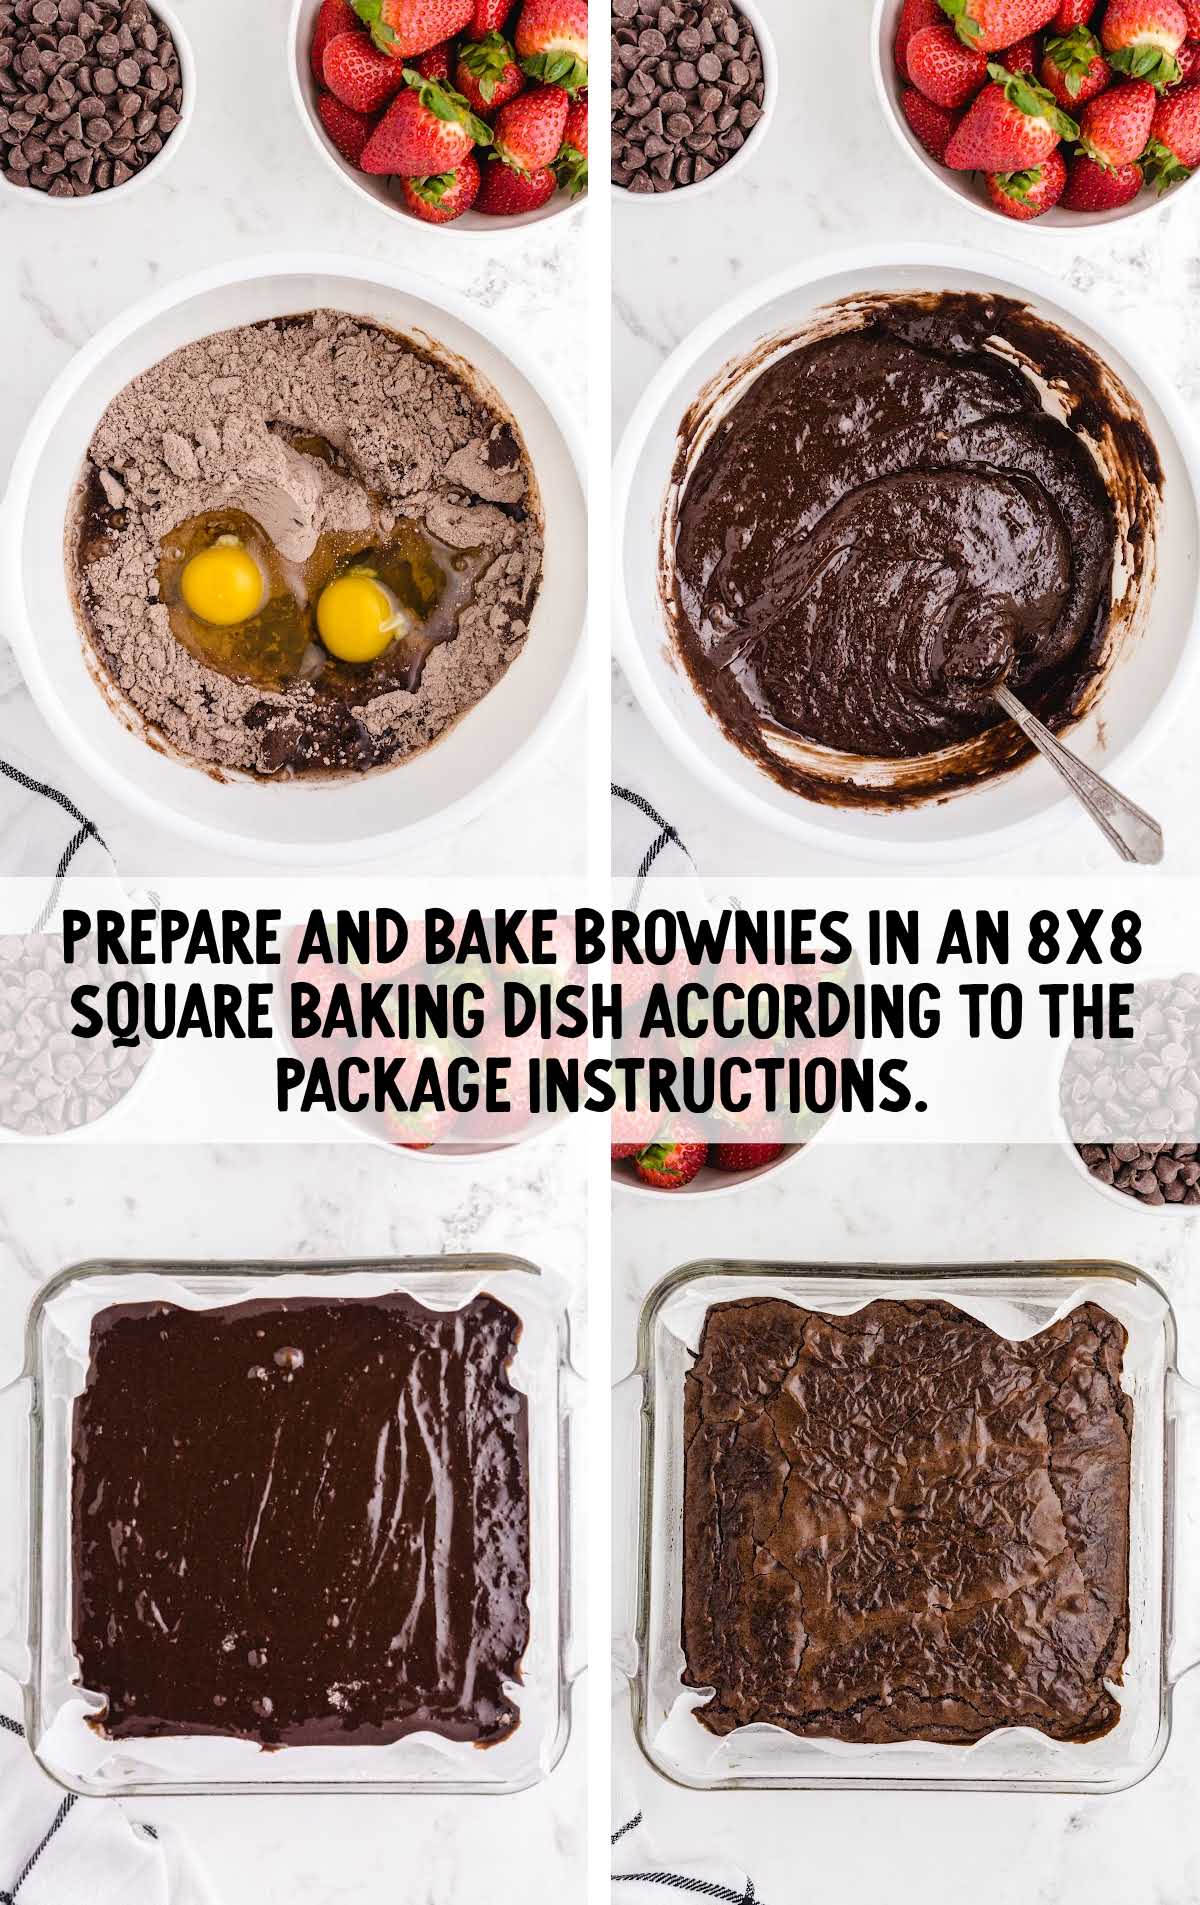 brownie ingredients being prepared and baked